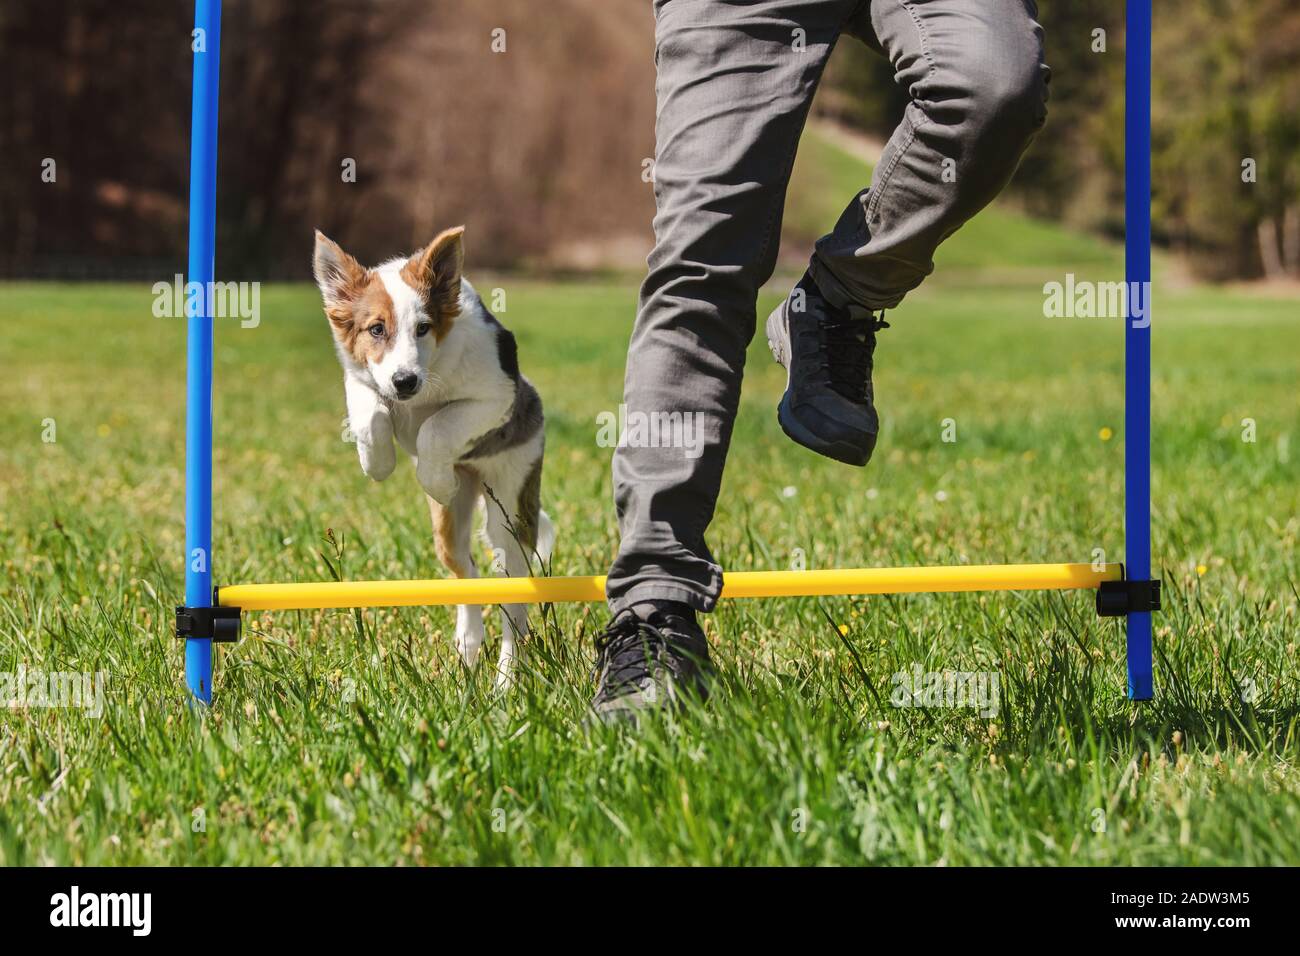 La agilidad del perro entrenamiento deportivo con un cachorro de perro, el hombre y el cachorro saltar por encima de obstáculos Foto de stock